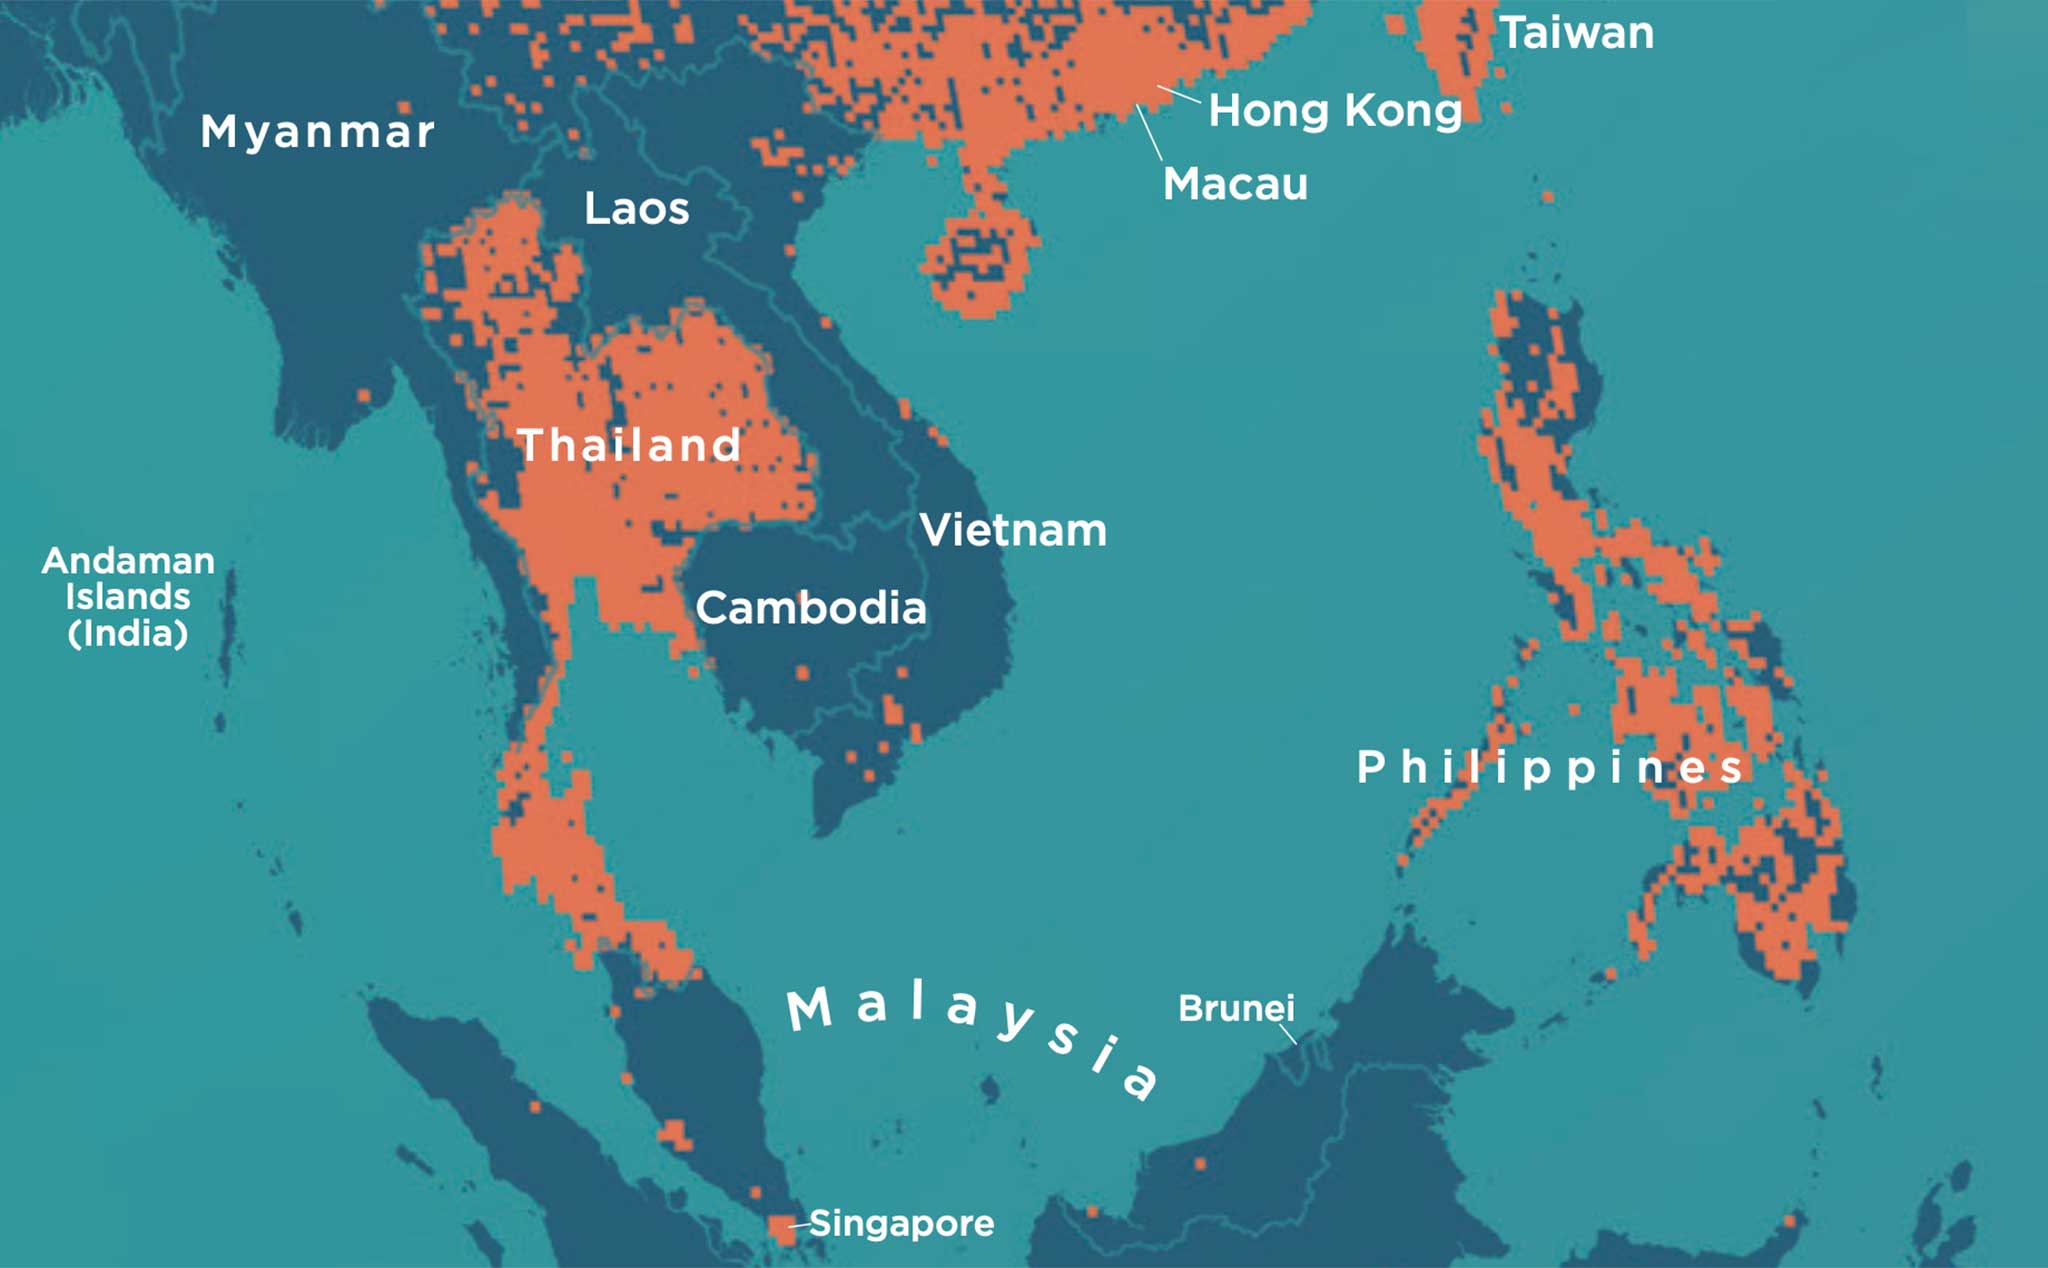 Bản đồ phủ sóng 5G Đông Nam Á 2024 sẽ mở ra một thế giới mới của truy cập internet với tốc độ cực nhanh. Khám phá bản đồ này để tìm hiểu về sự đột phá của công nghệ tiên tiến này trên toàn cầu. Hãy tận hưởng sức mạnh của sóng mạng 5G để truy cập internet một cách dễ dàng và nhanh chóng.